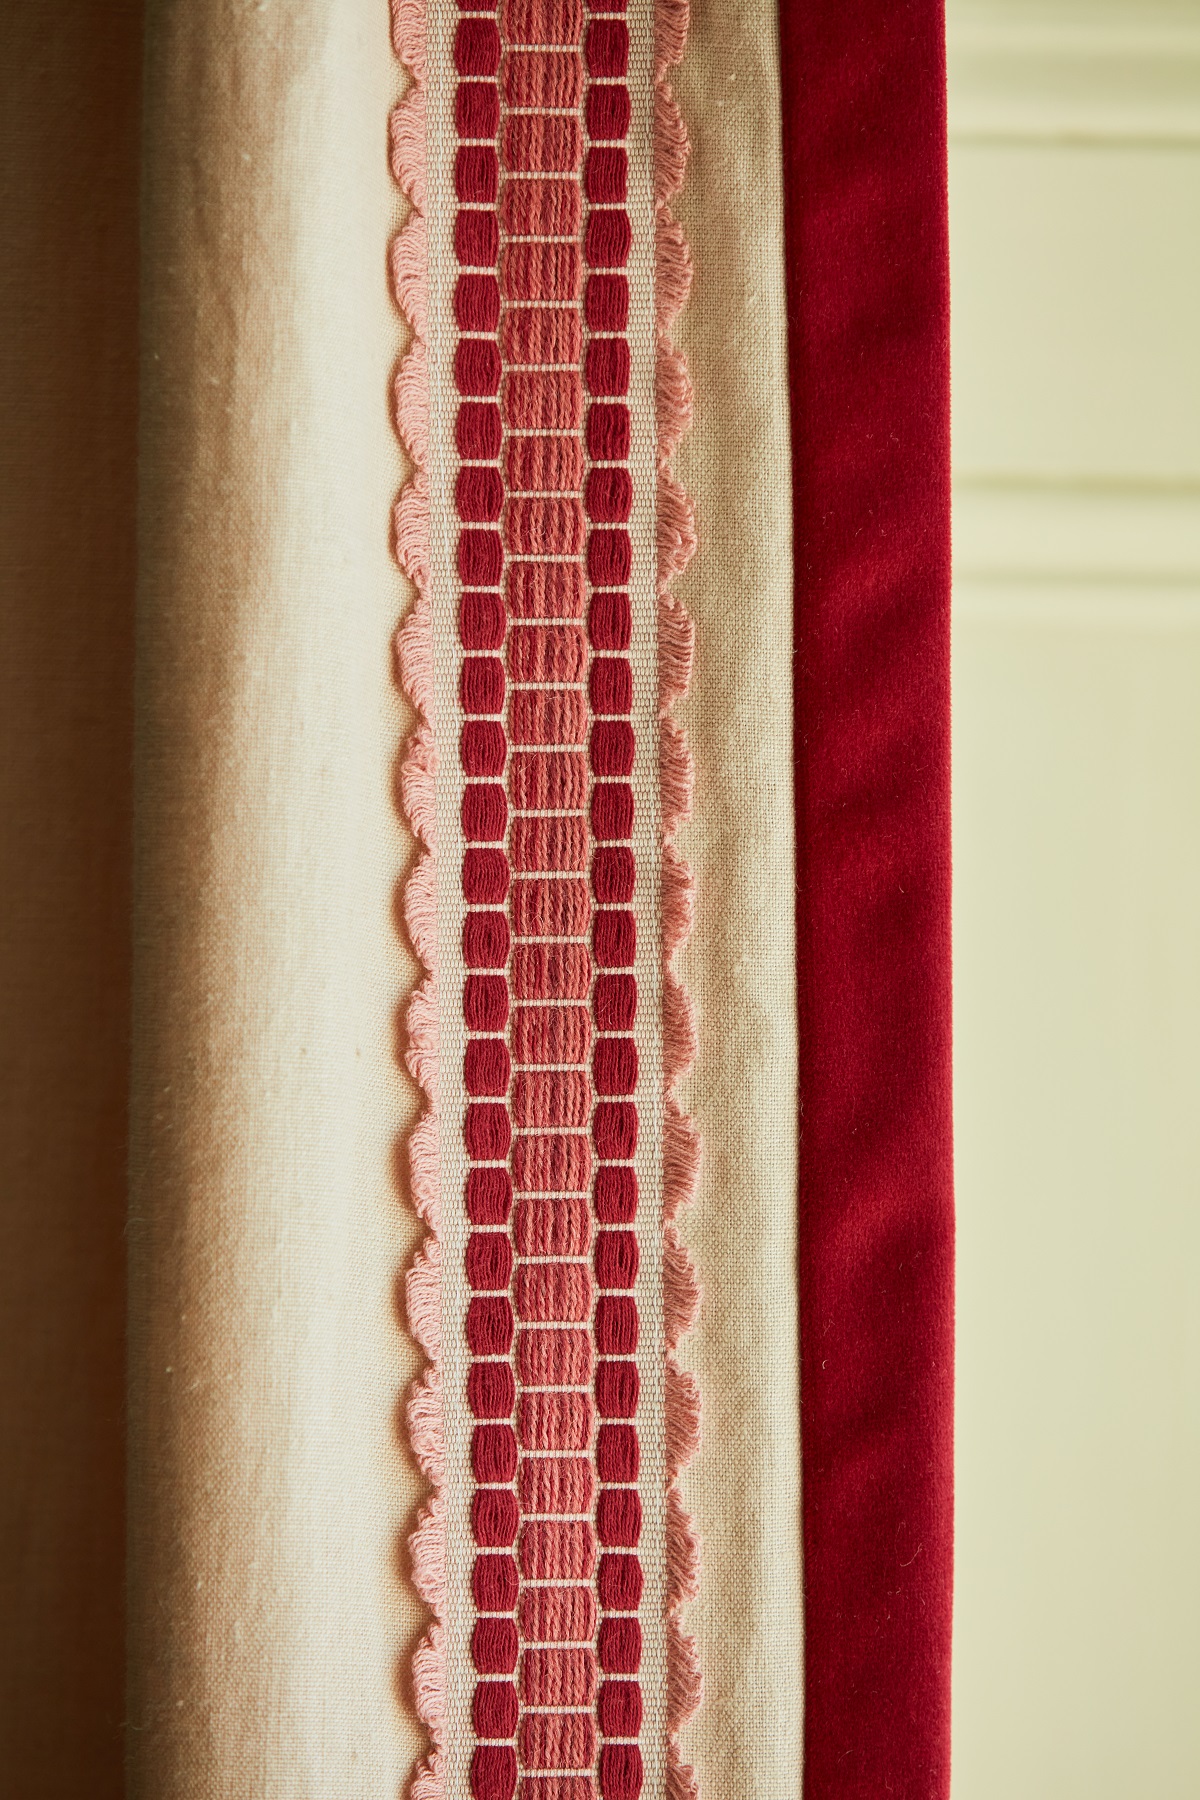 cream curtain edged with red decorative trim